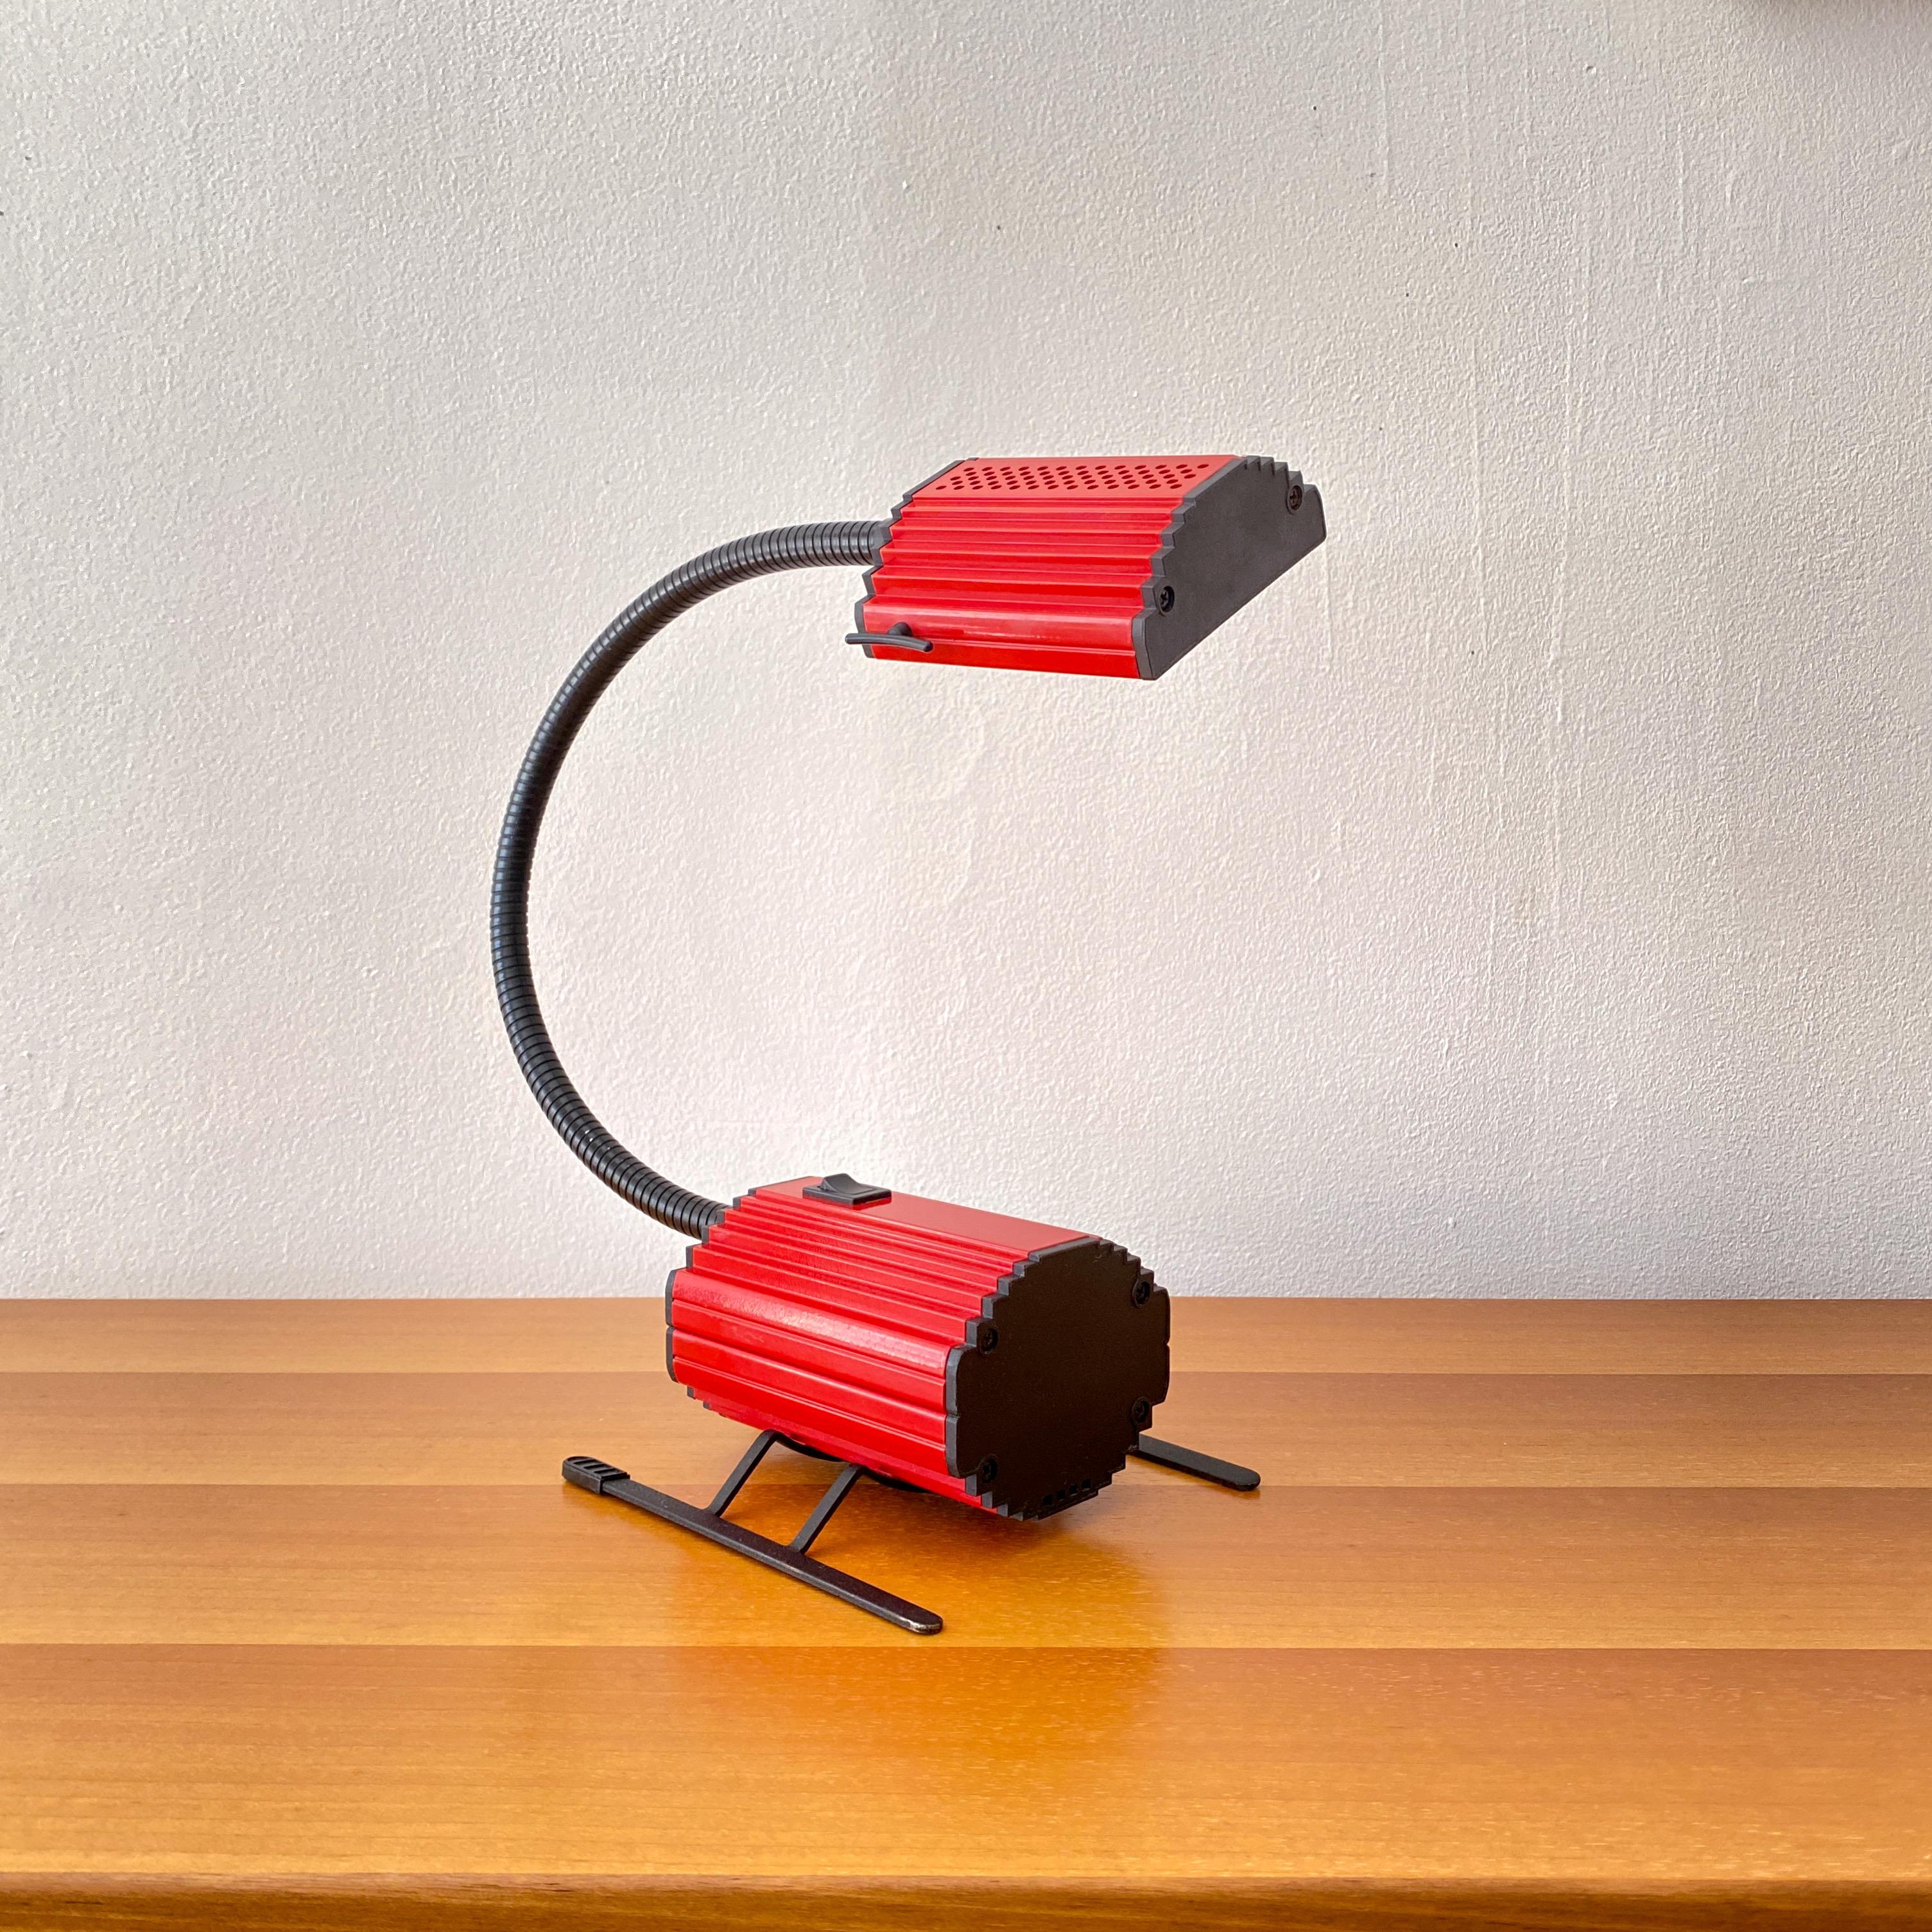 Lampe de table vintage conçue en 1983 par Enzio Didone pour Arteluce et fabriquée en Italie.  La lampe est de type halogène avec un capot et un corps en métal peint en rouge. Les embouts du capot et du corps sont en plastique noir, le col de cygne